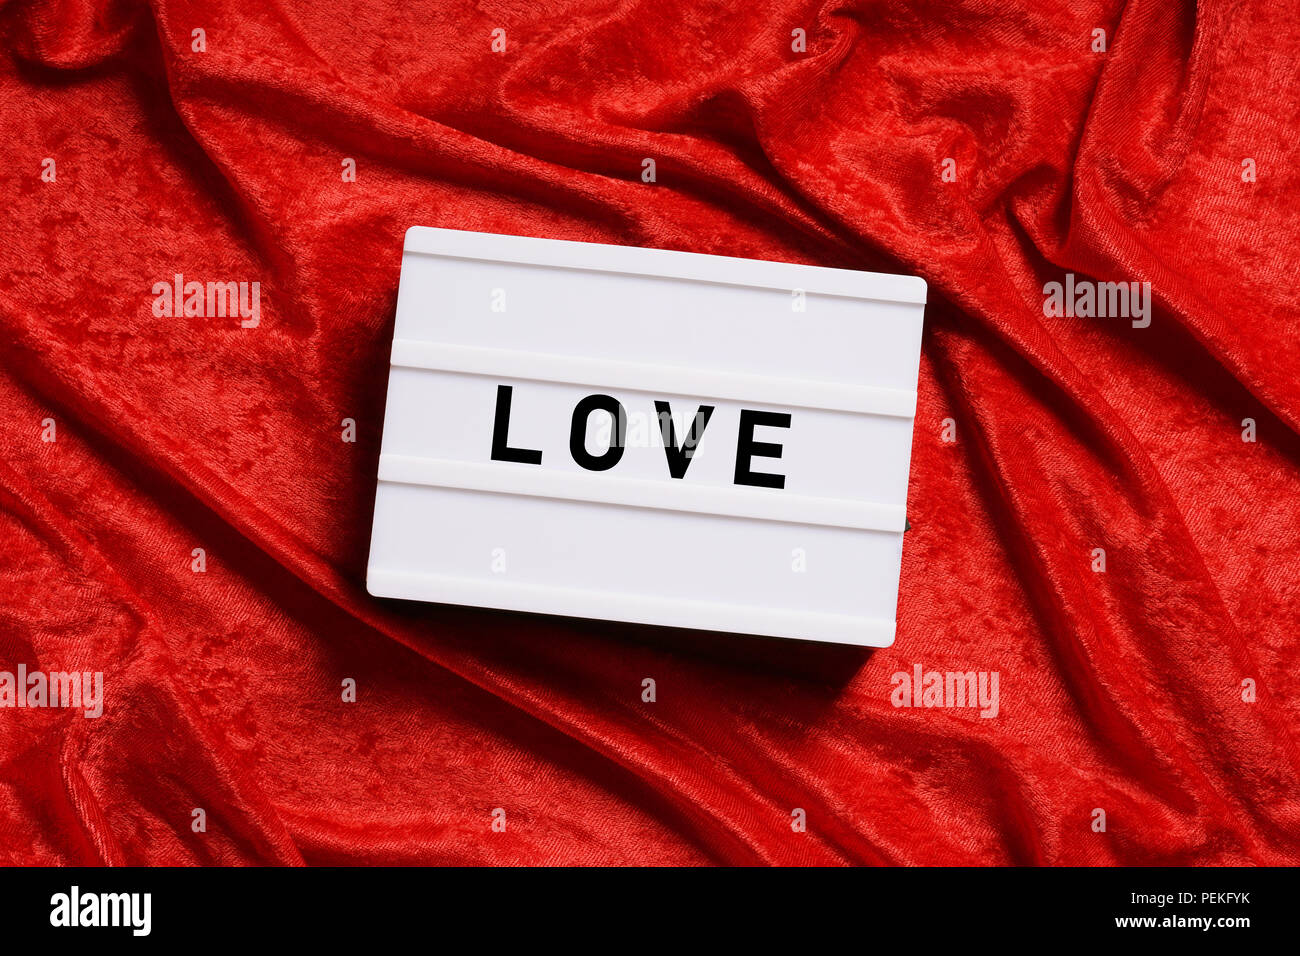 love, word on lightbox or light box sign on red velvet background Stock Photo